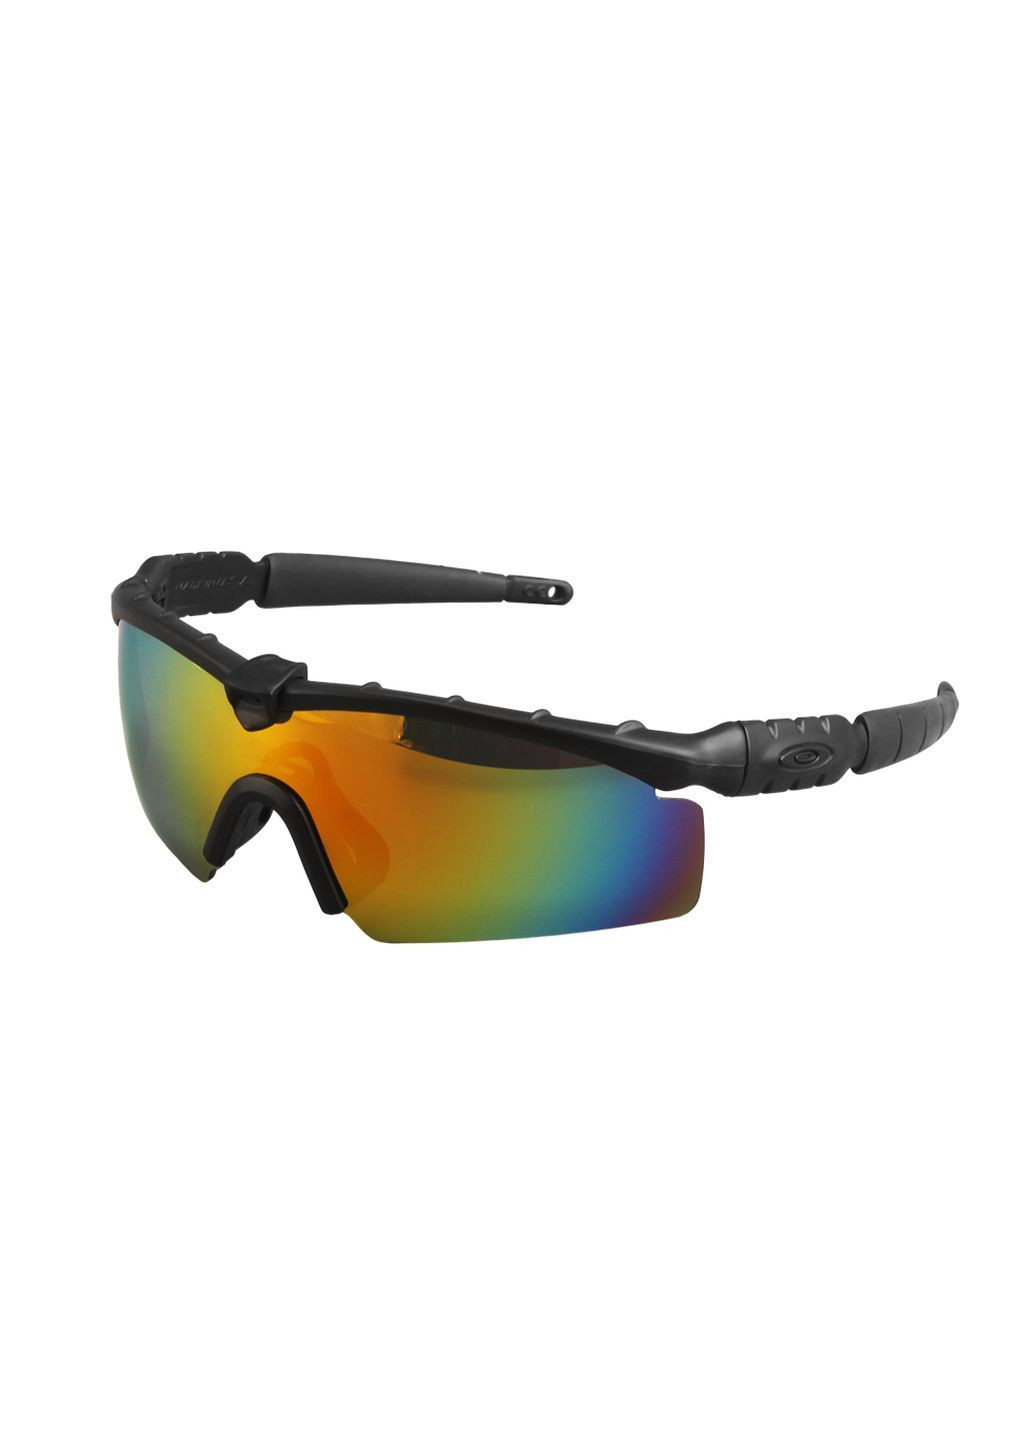 Защитные очки Оakley-3.0 Black, черные очки, с поляризацией Oakley (280826714)